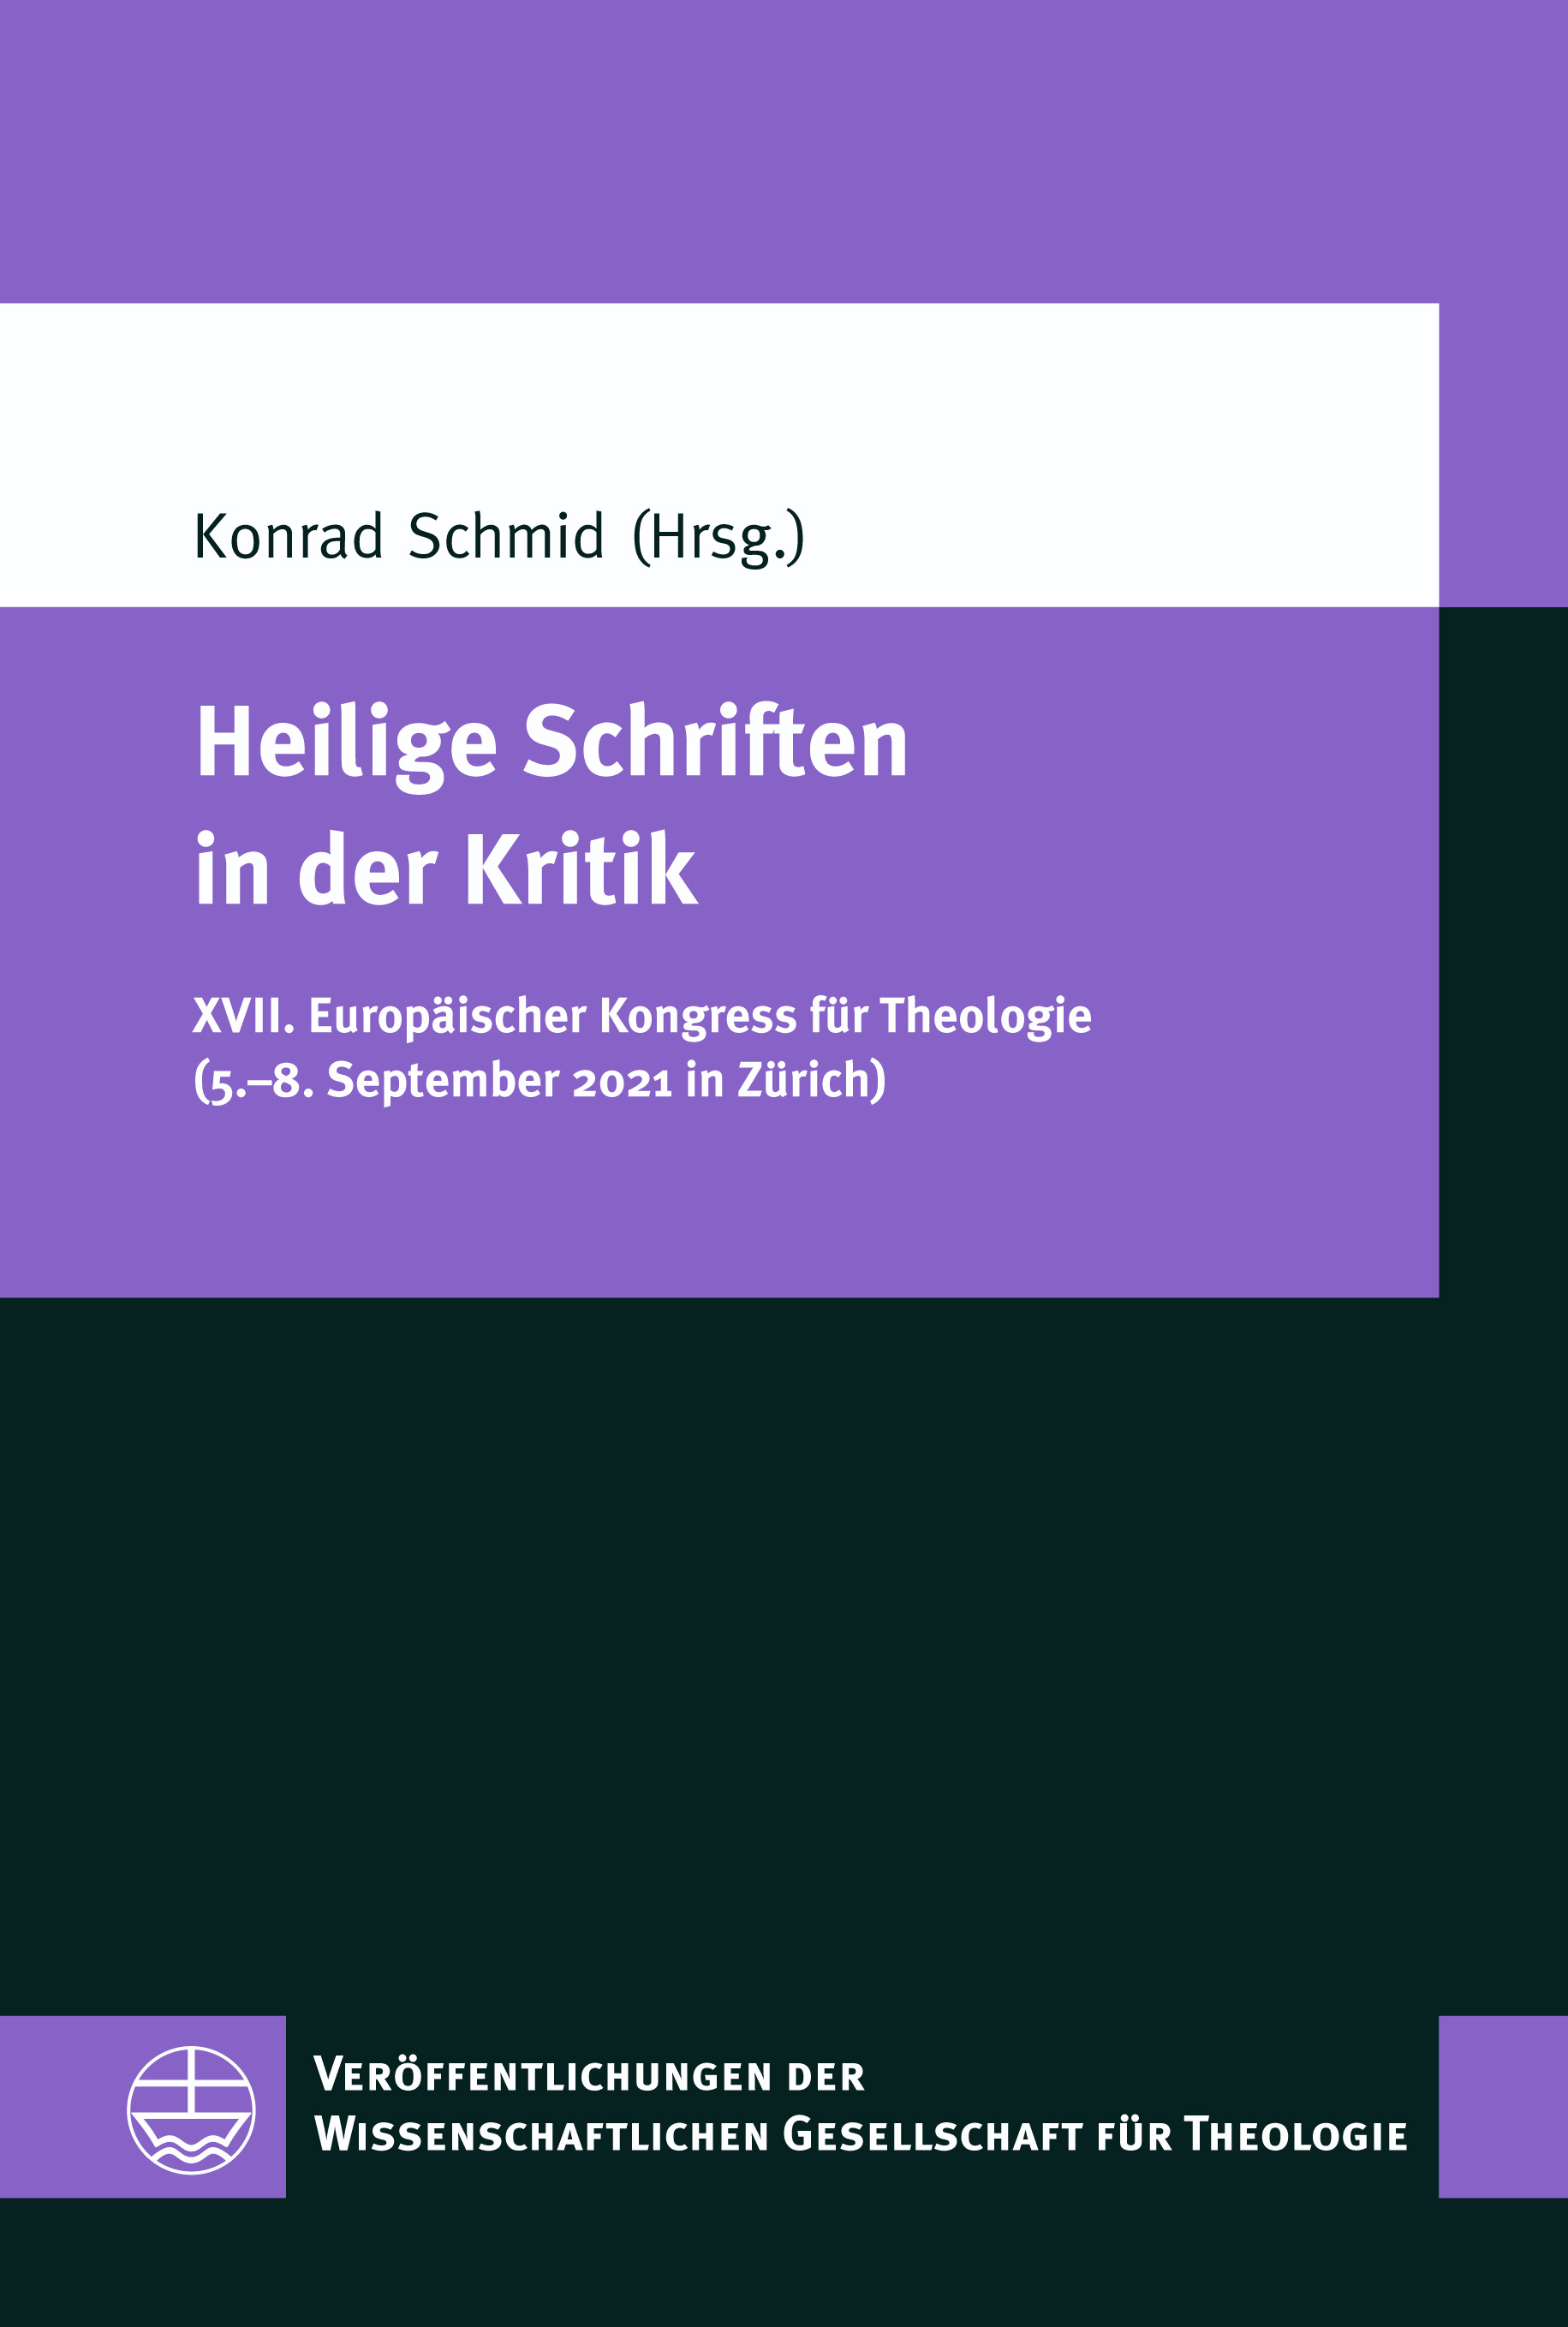 eva cover 07227 VWGTh 68 Schmid Heilige Schriften in der Kritik